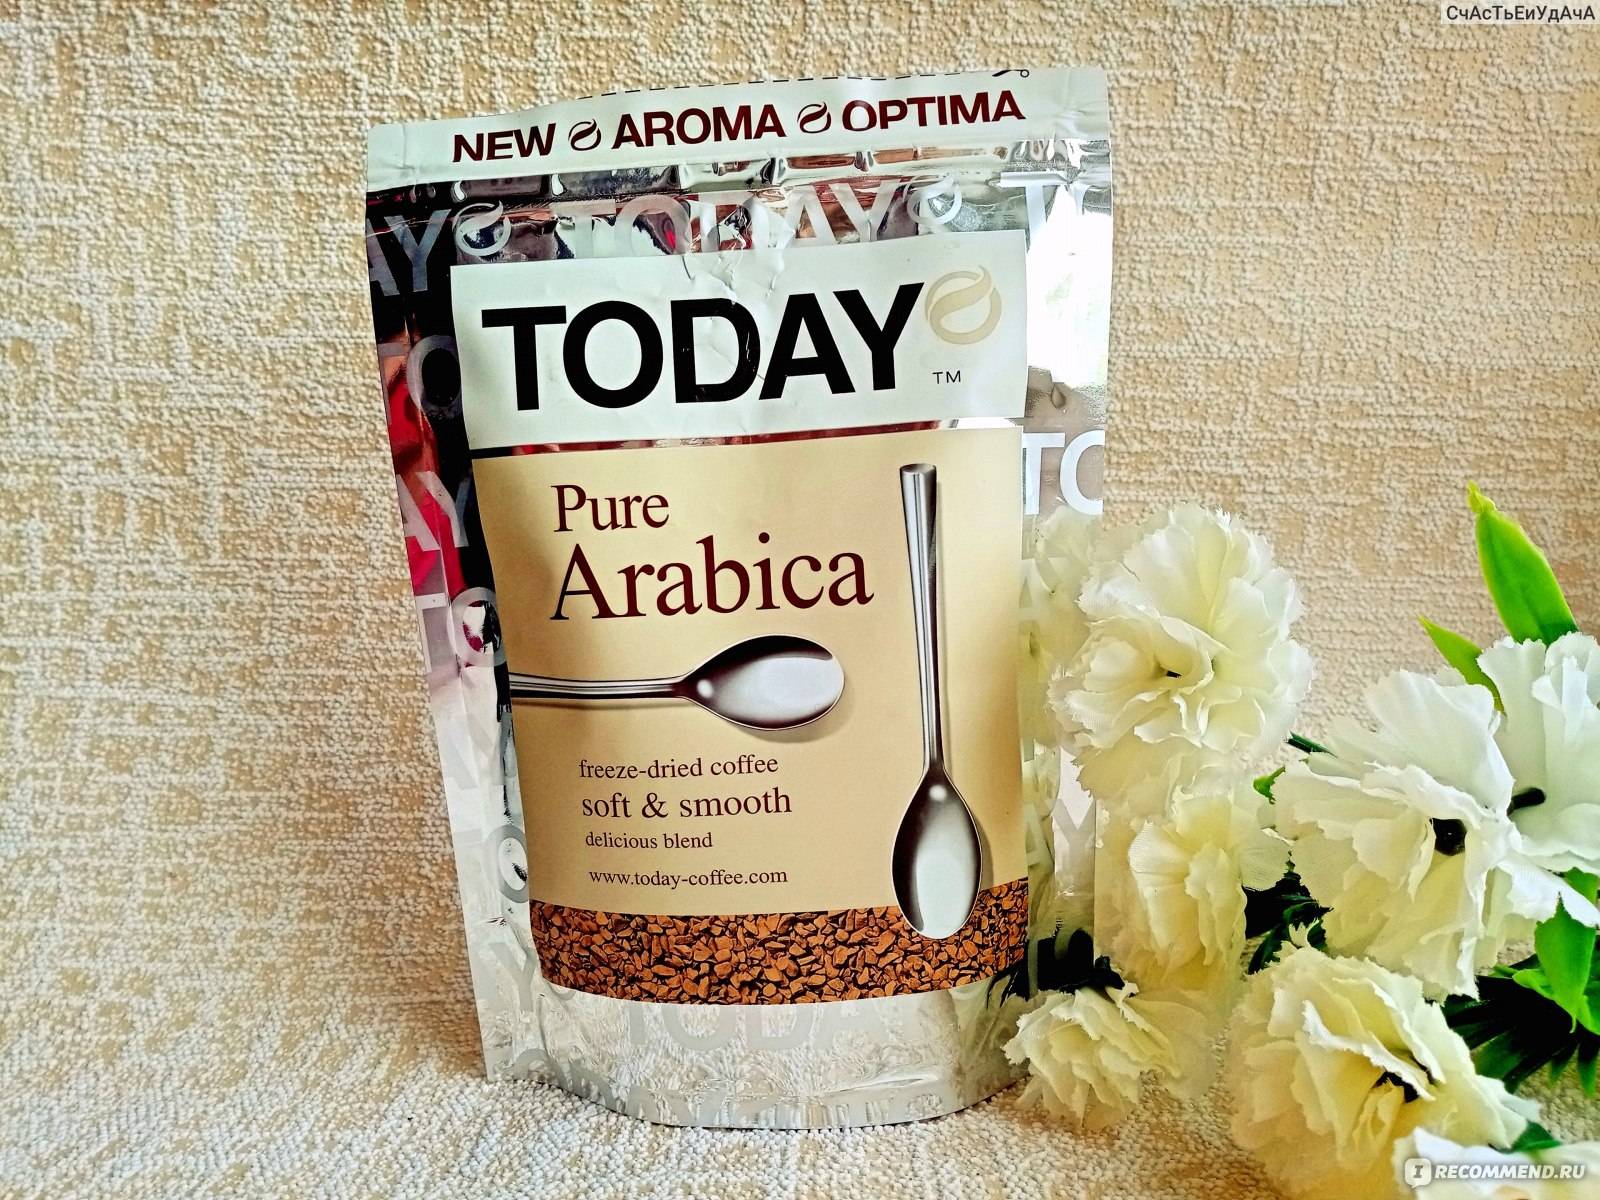 Отзывы кофе today pure arabica » нашемнение - сайт отзывов обо всем